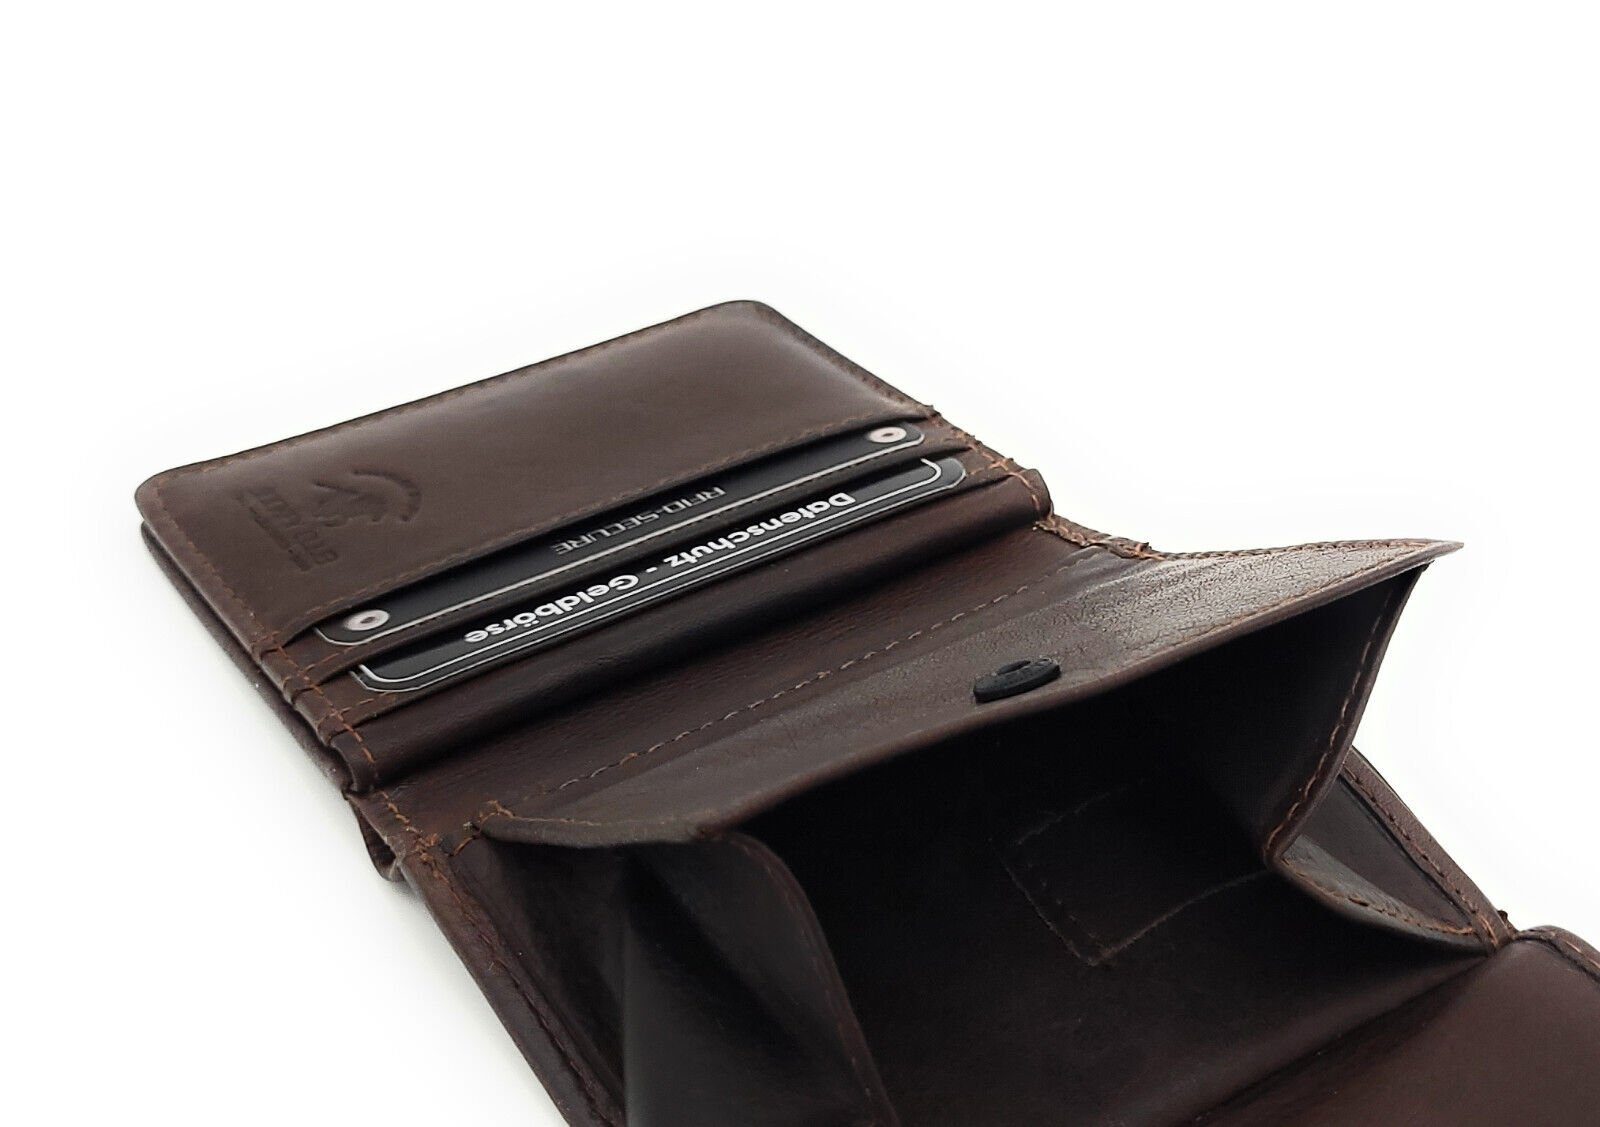 gewachstes Schutz Geldbörse Mini RFID Leder Portemonnaie vintage dunkelbraun, echt Rindleder CLUB JOCKEY mit